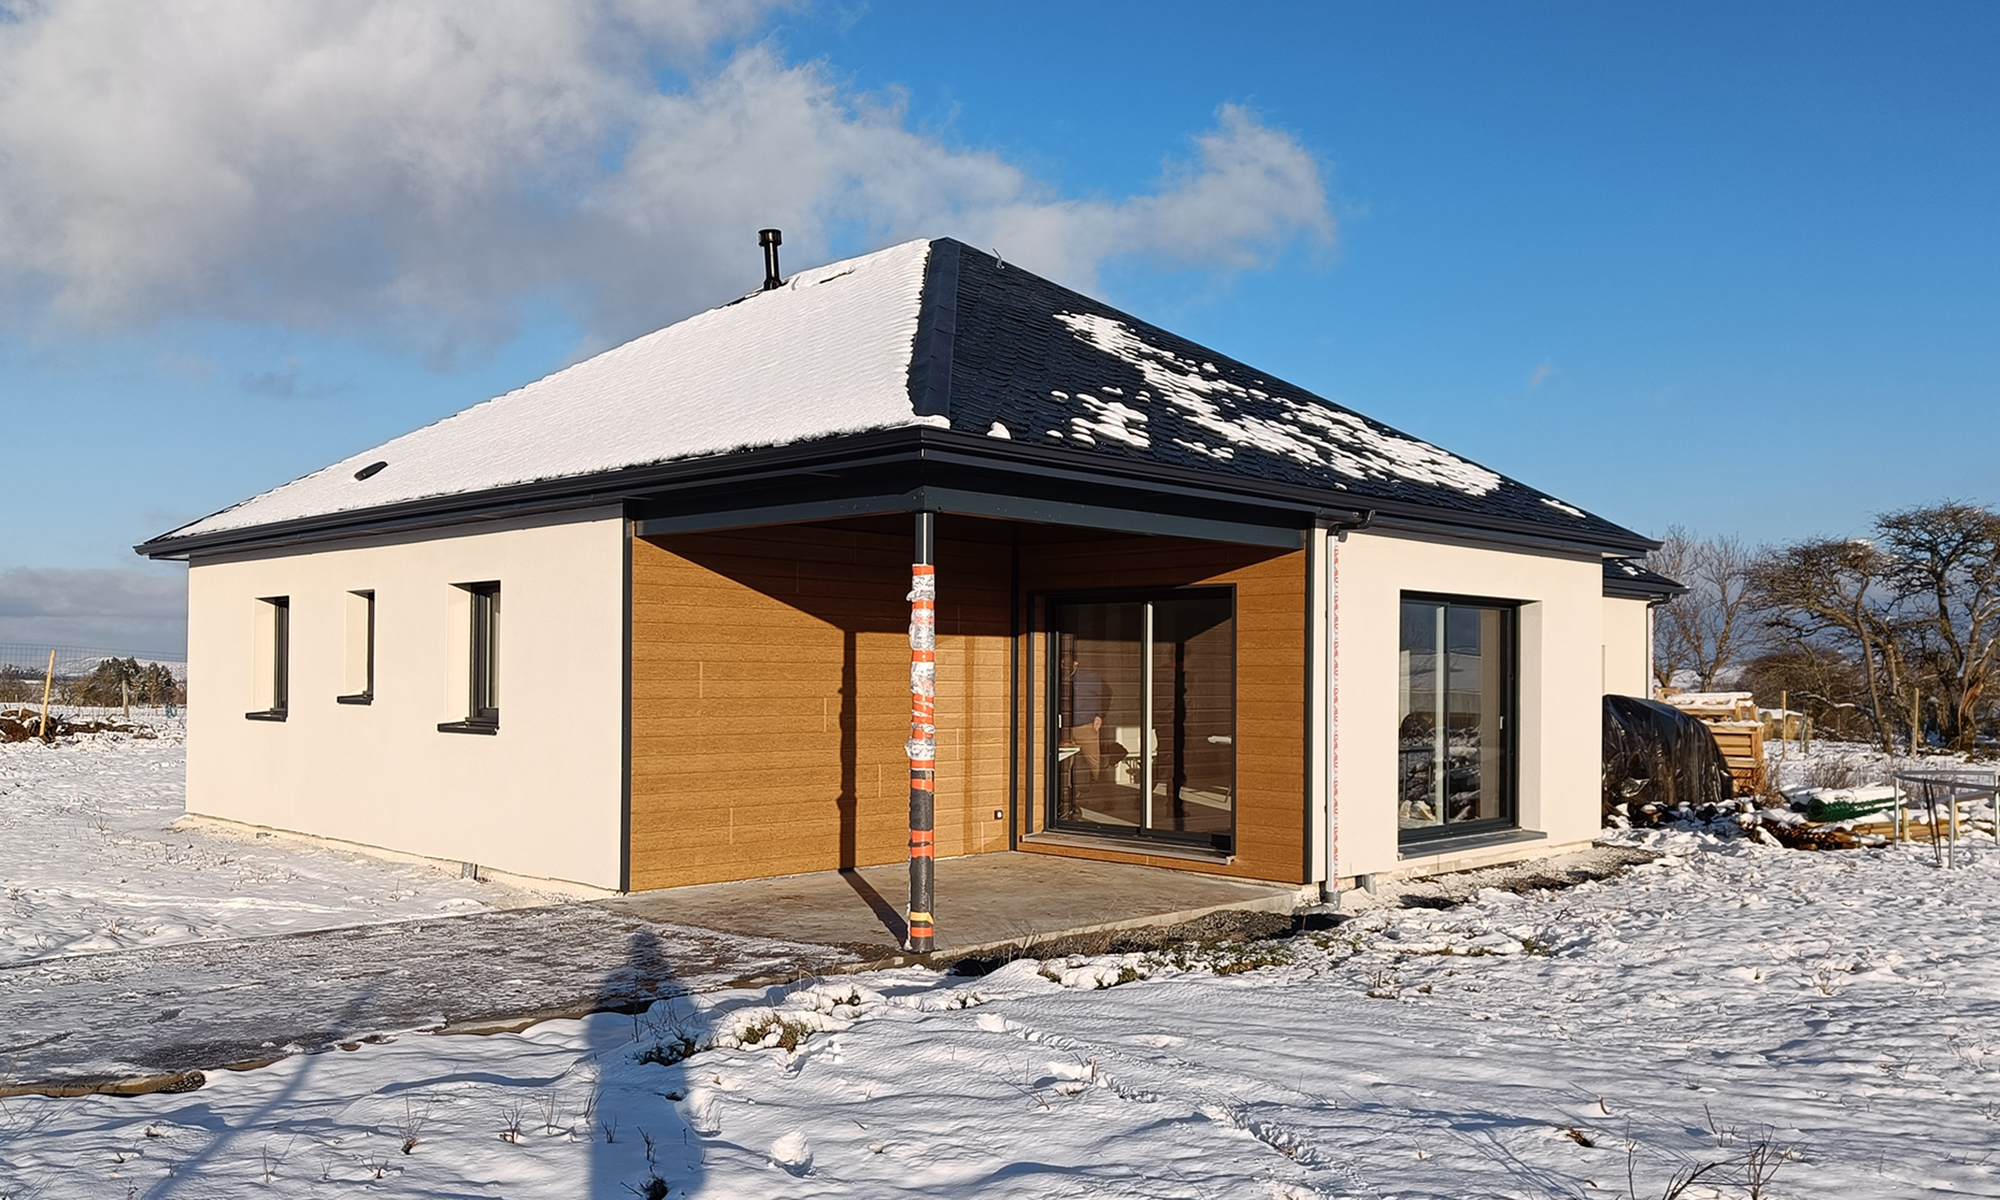 maison à ossature bois avec terrasse bien abritée